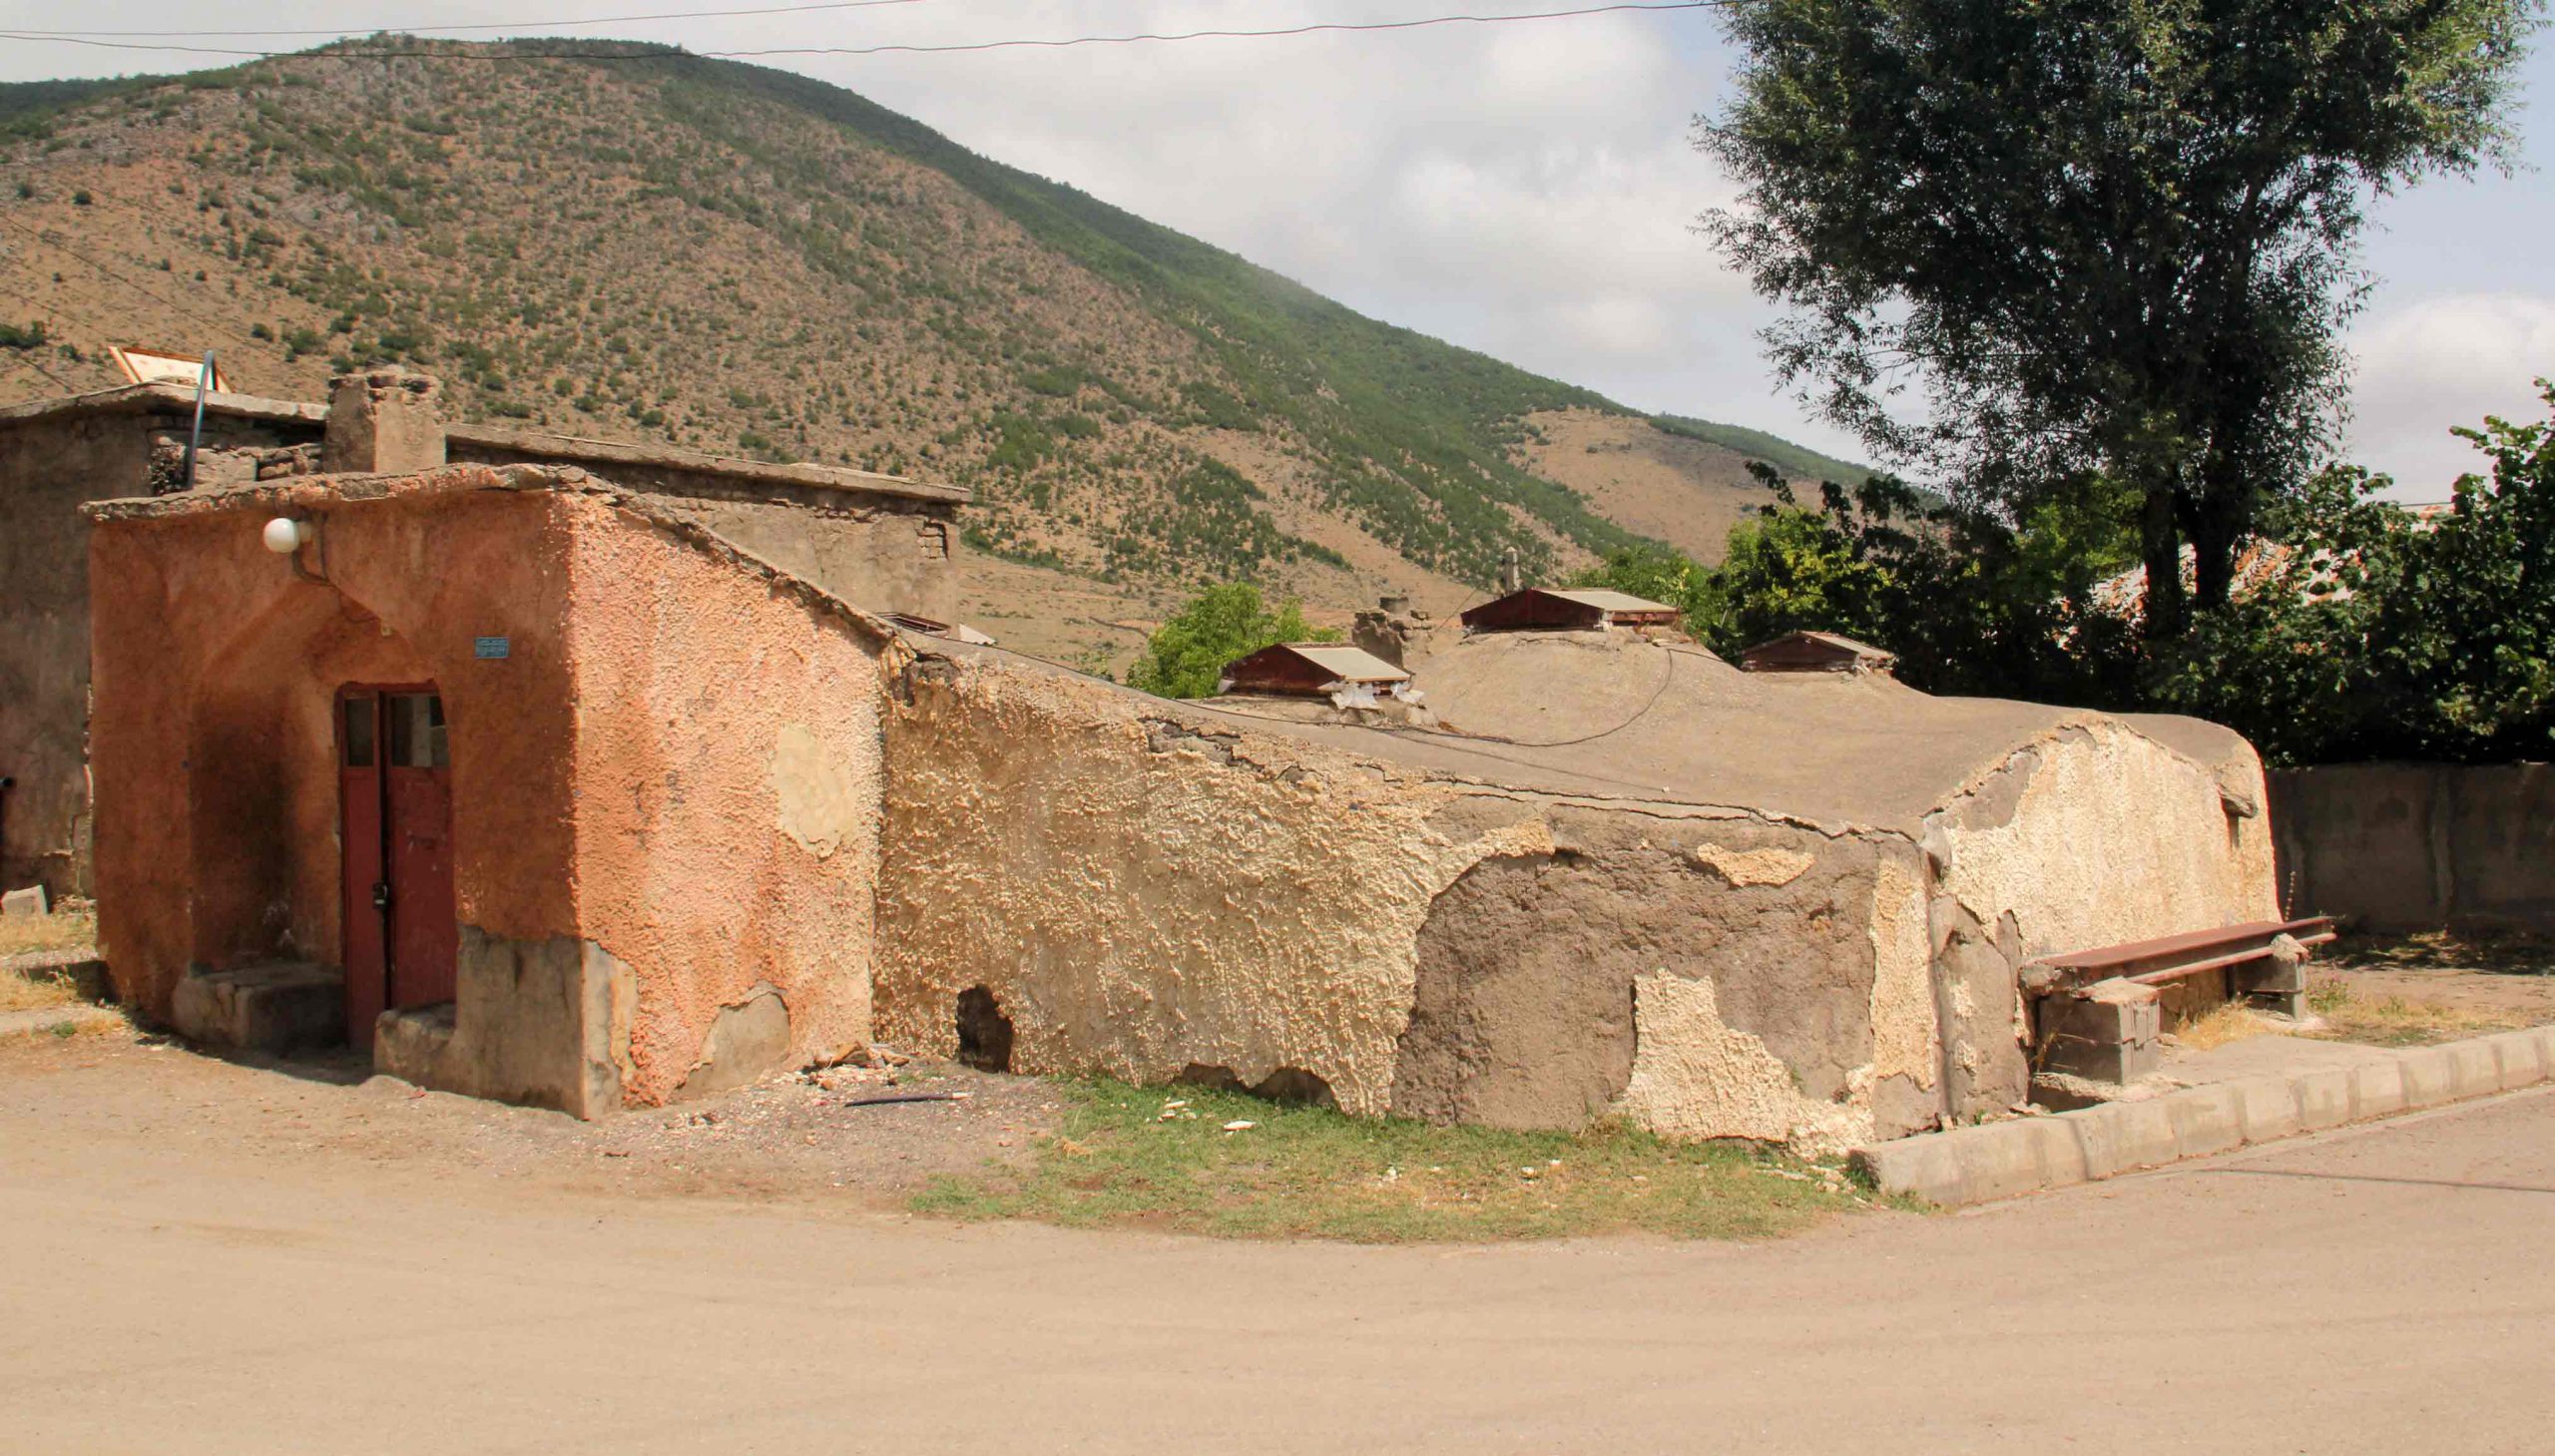 حمام تاریخی روستای زانوس, Historical Bath in Zanus Village